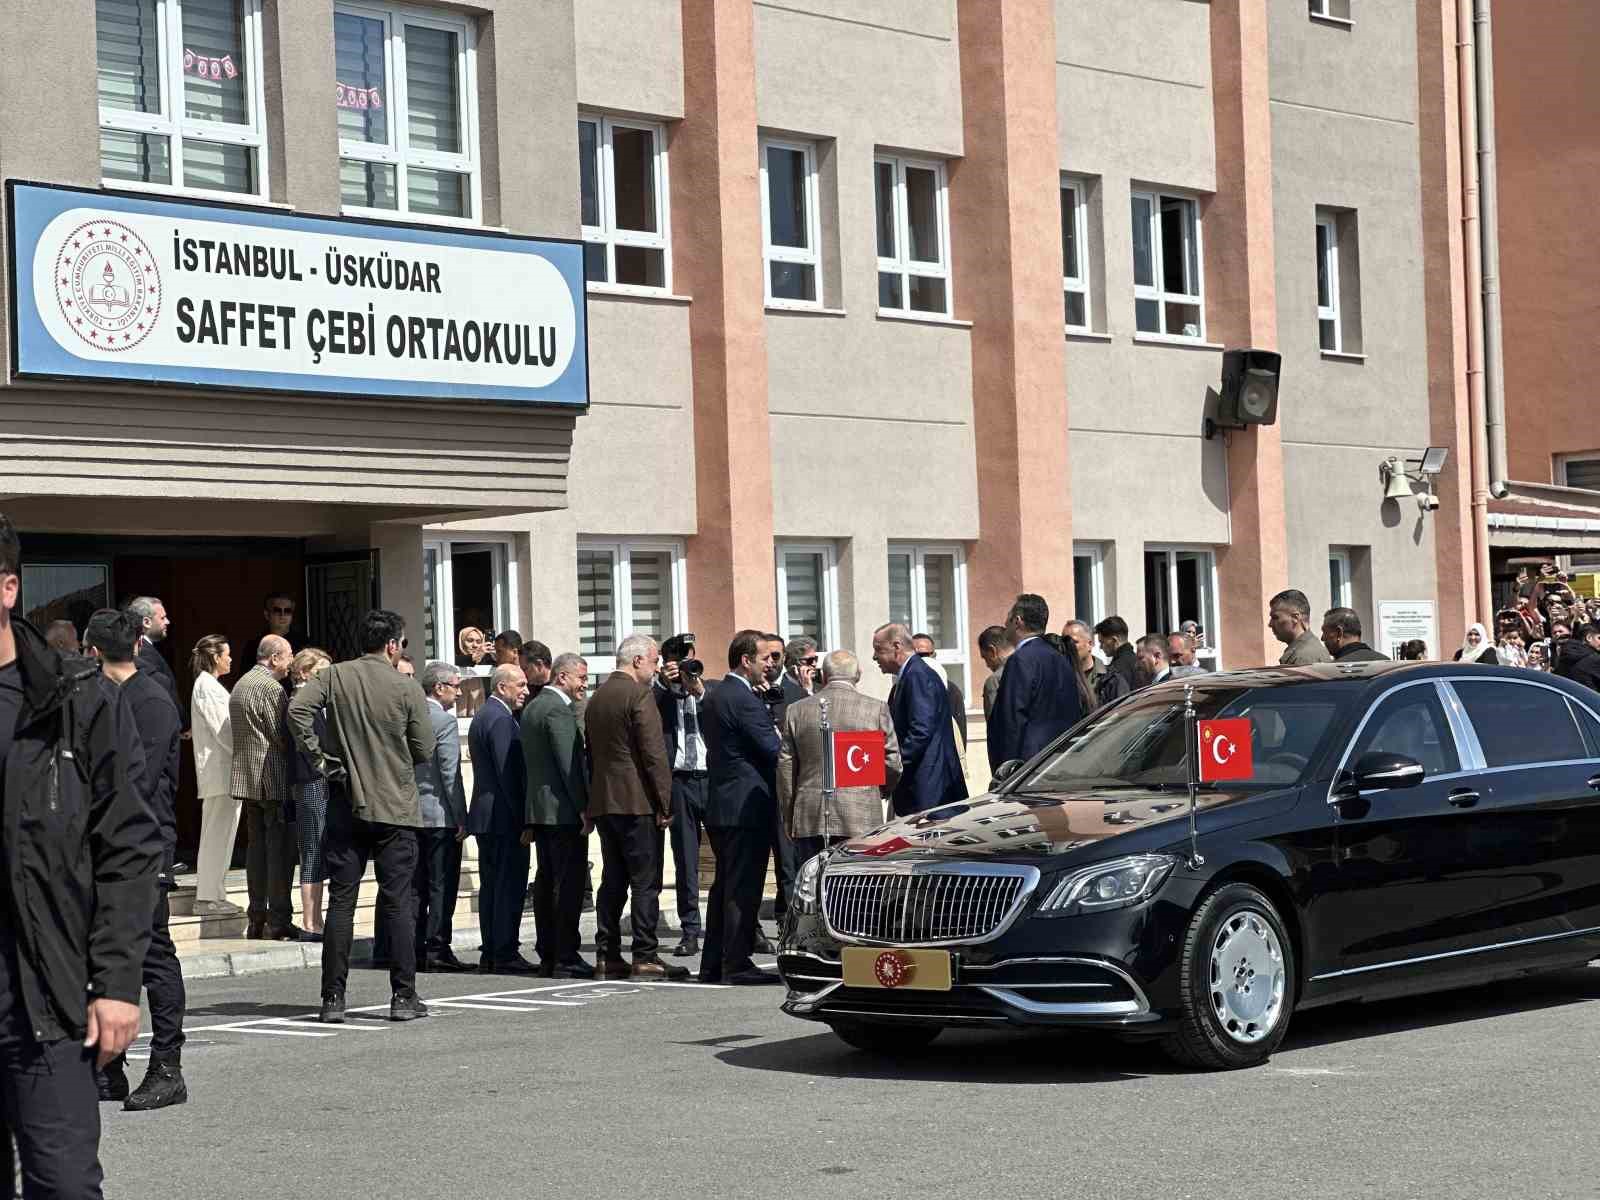 Cumhurbaşkanı Recep Tayyip Erdoğan, oyunu Üsküdar’da kullandı